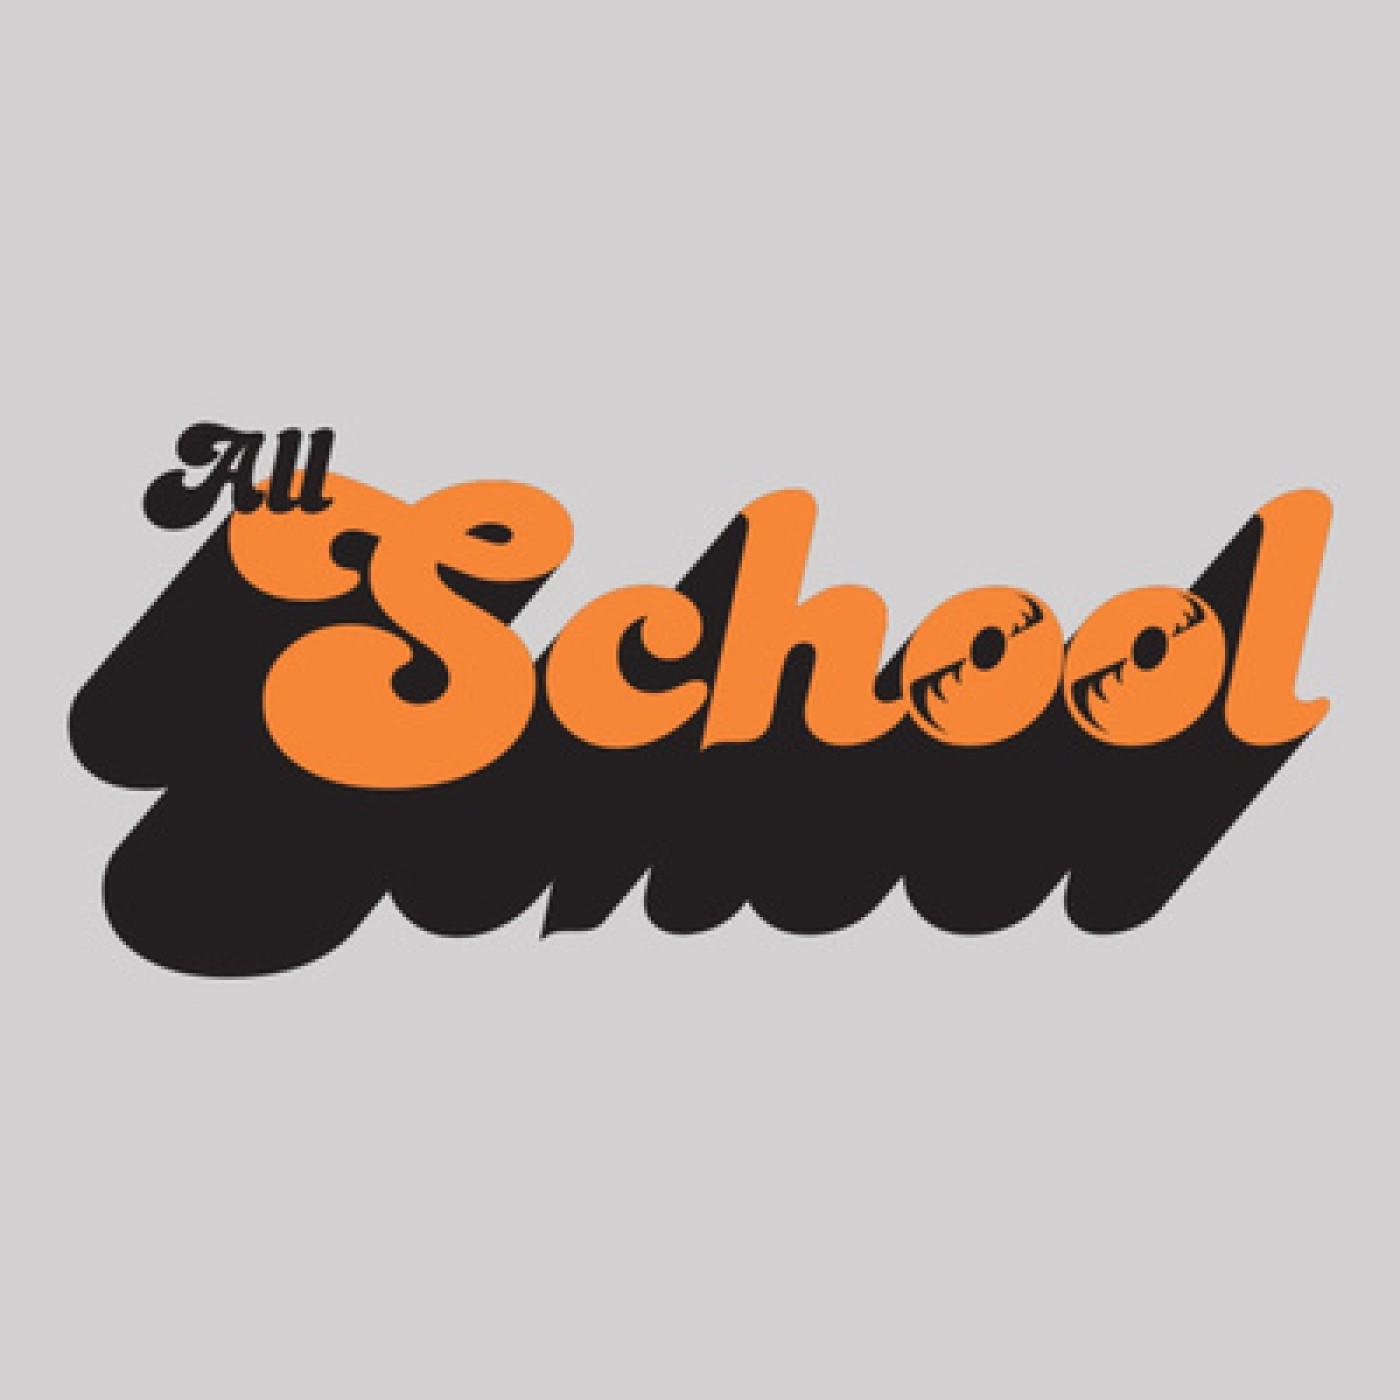 All School #6 feat. Jimmy Capdevila